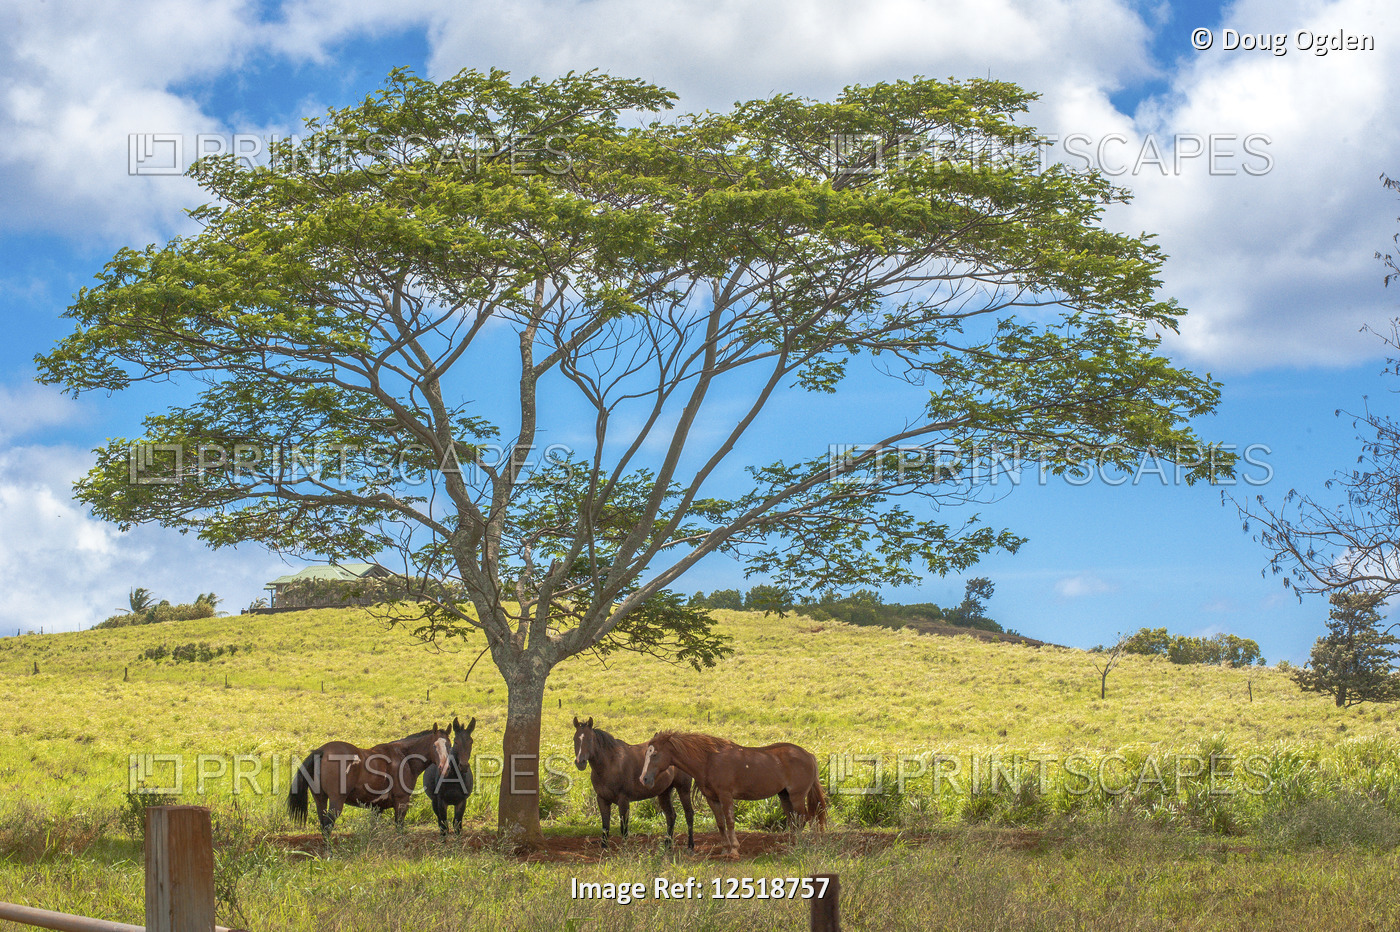 Horses taking shade in the Hawaiian afternoon sun